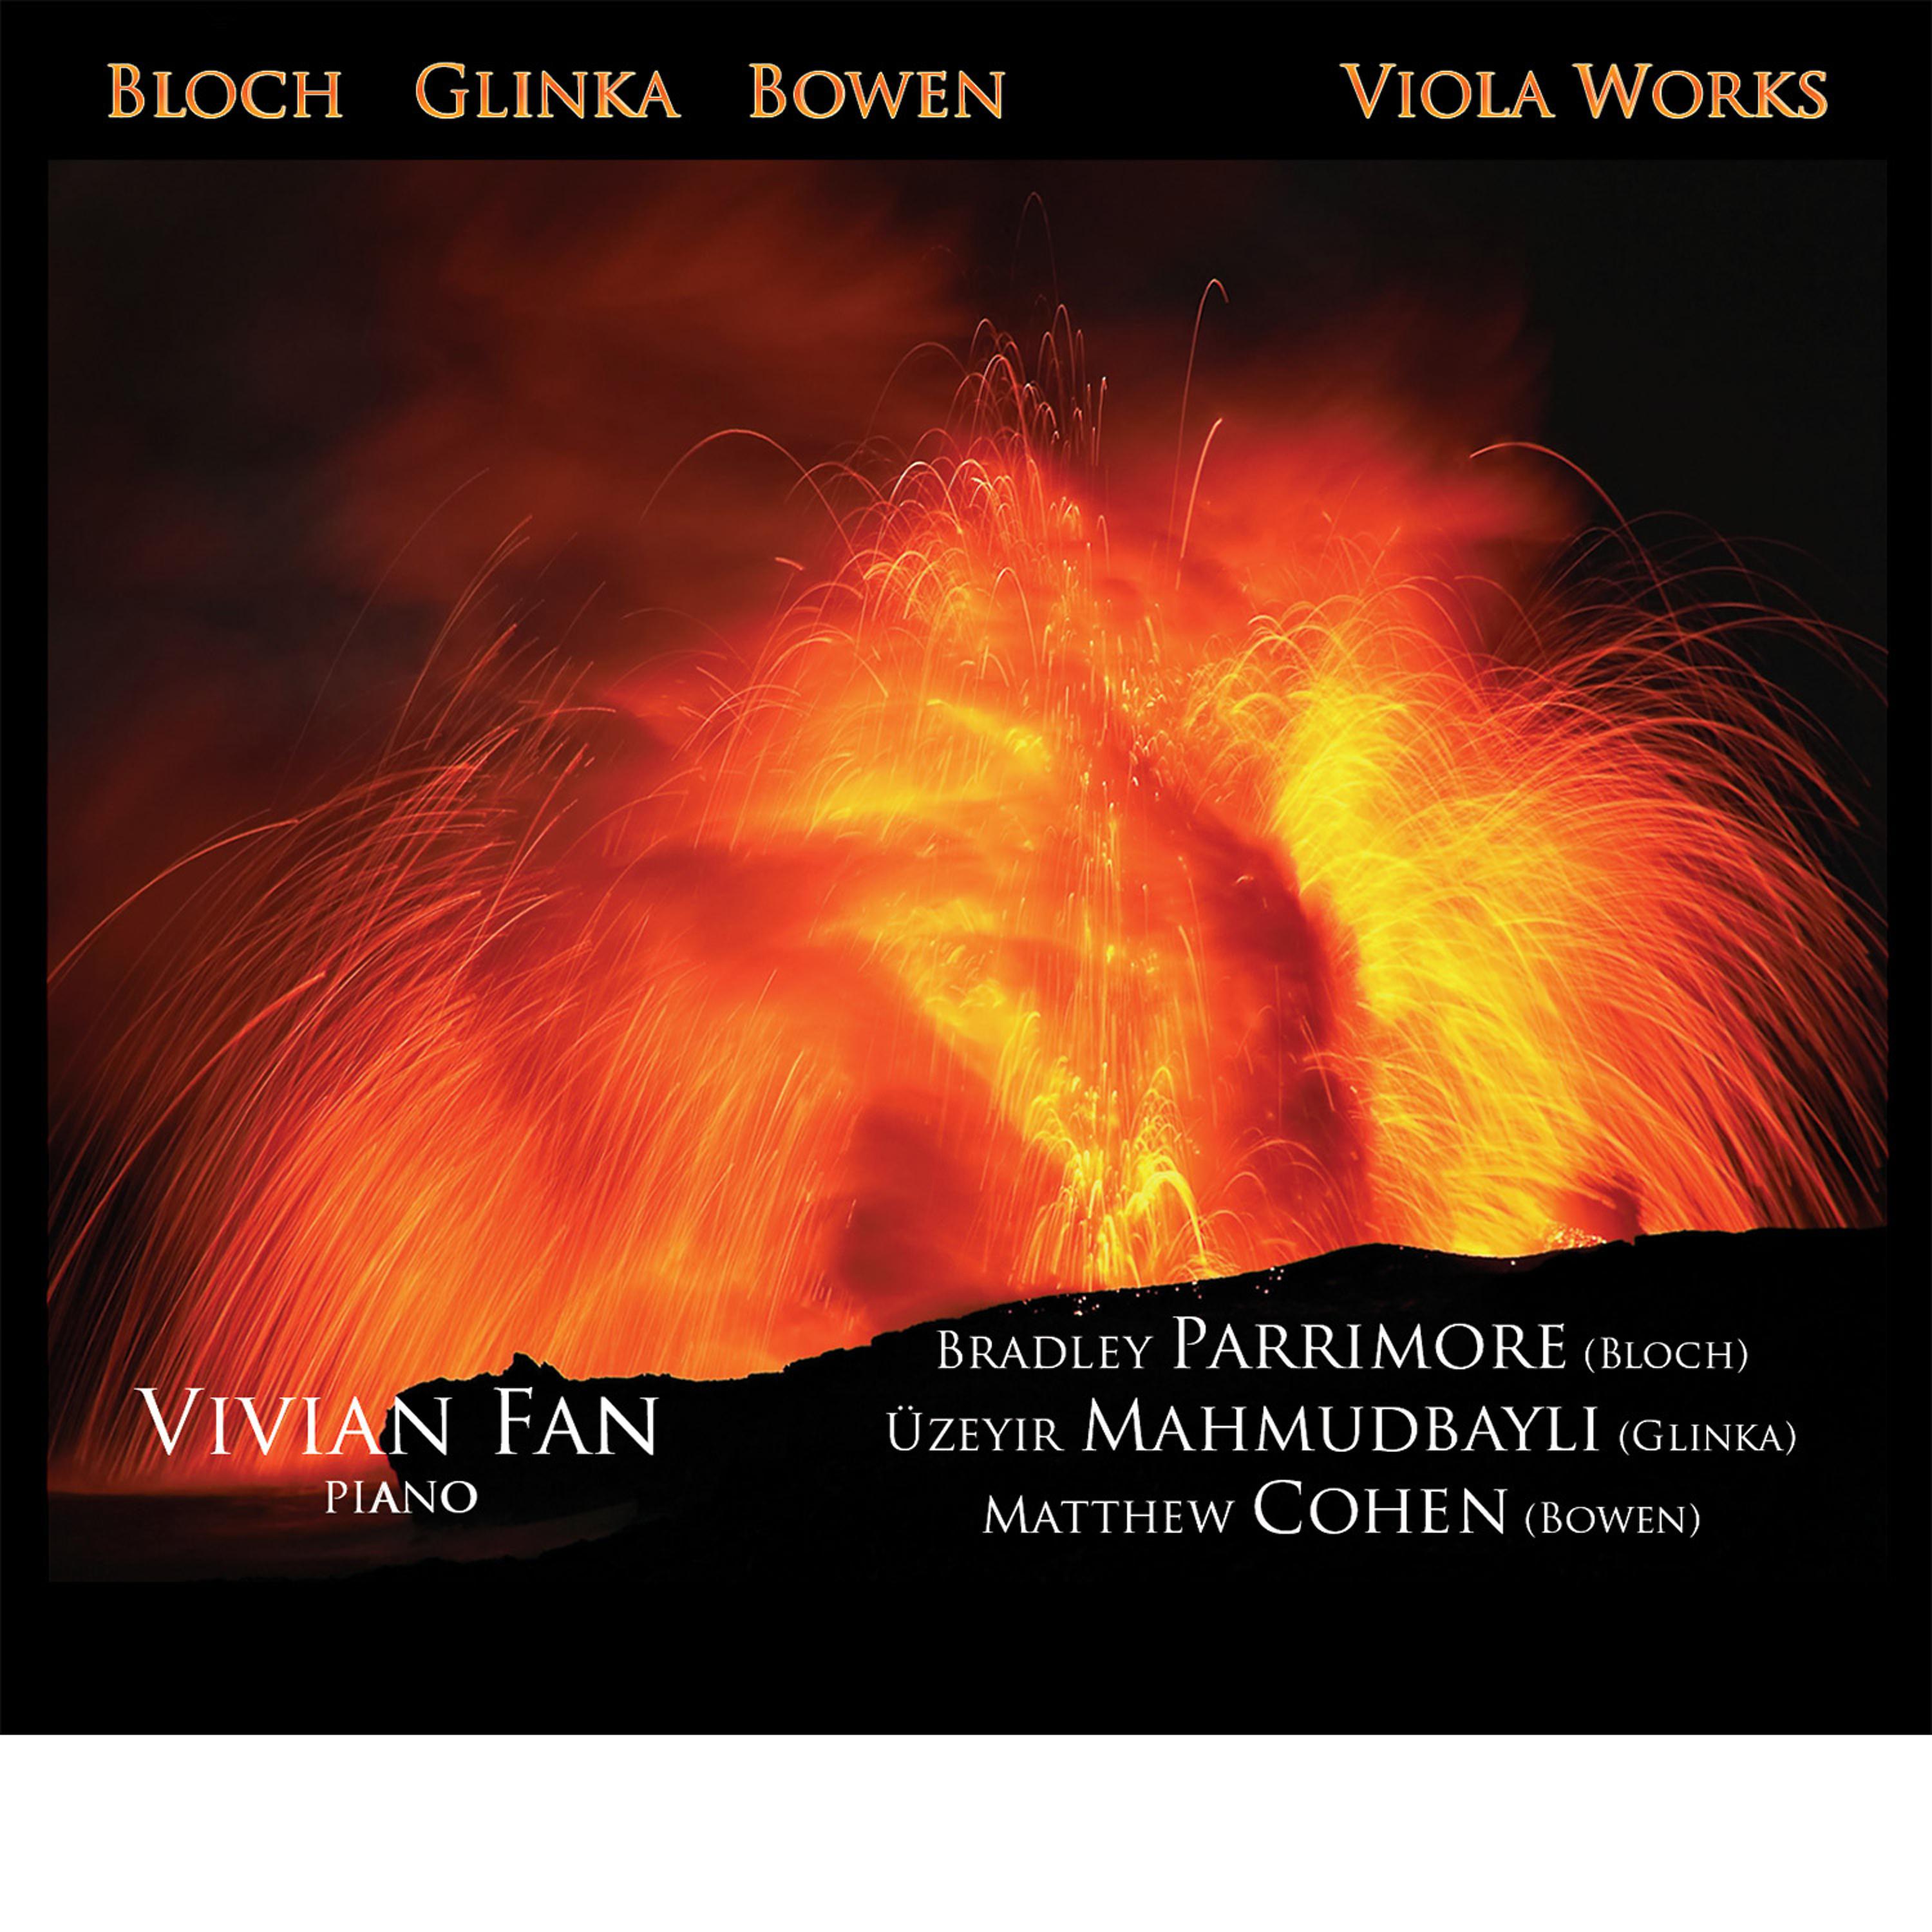 Постер альбома Bloch, Glinka, Bowen: Viola Works